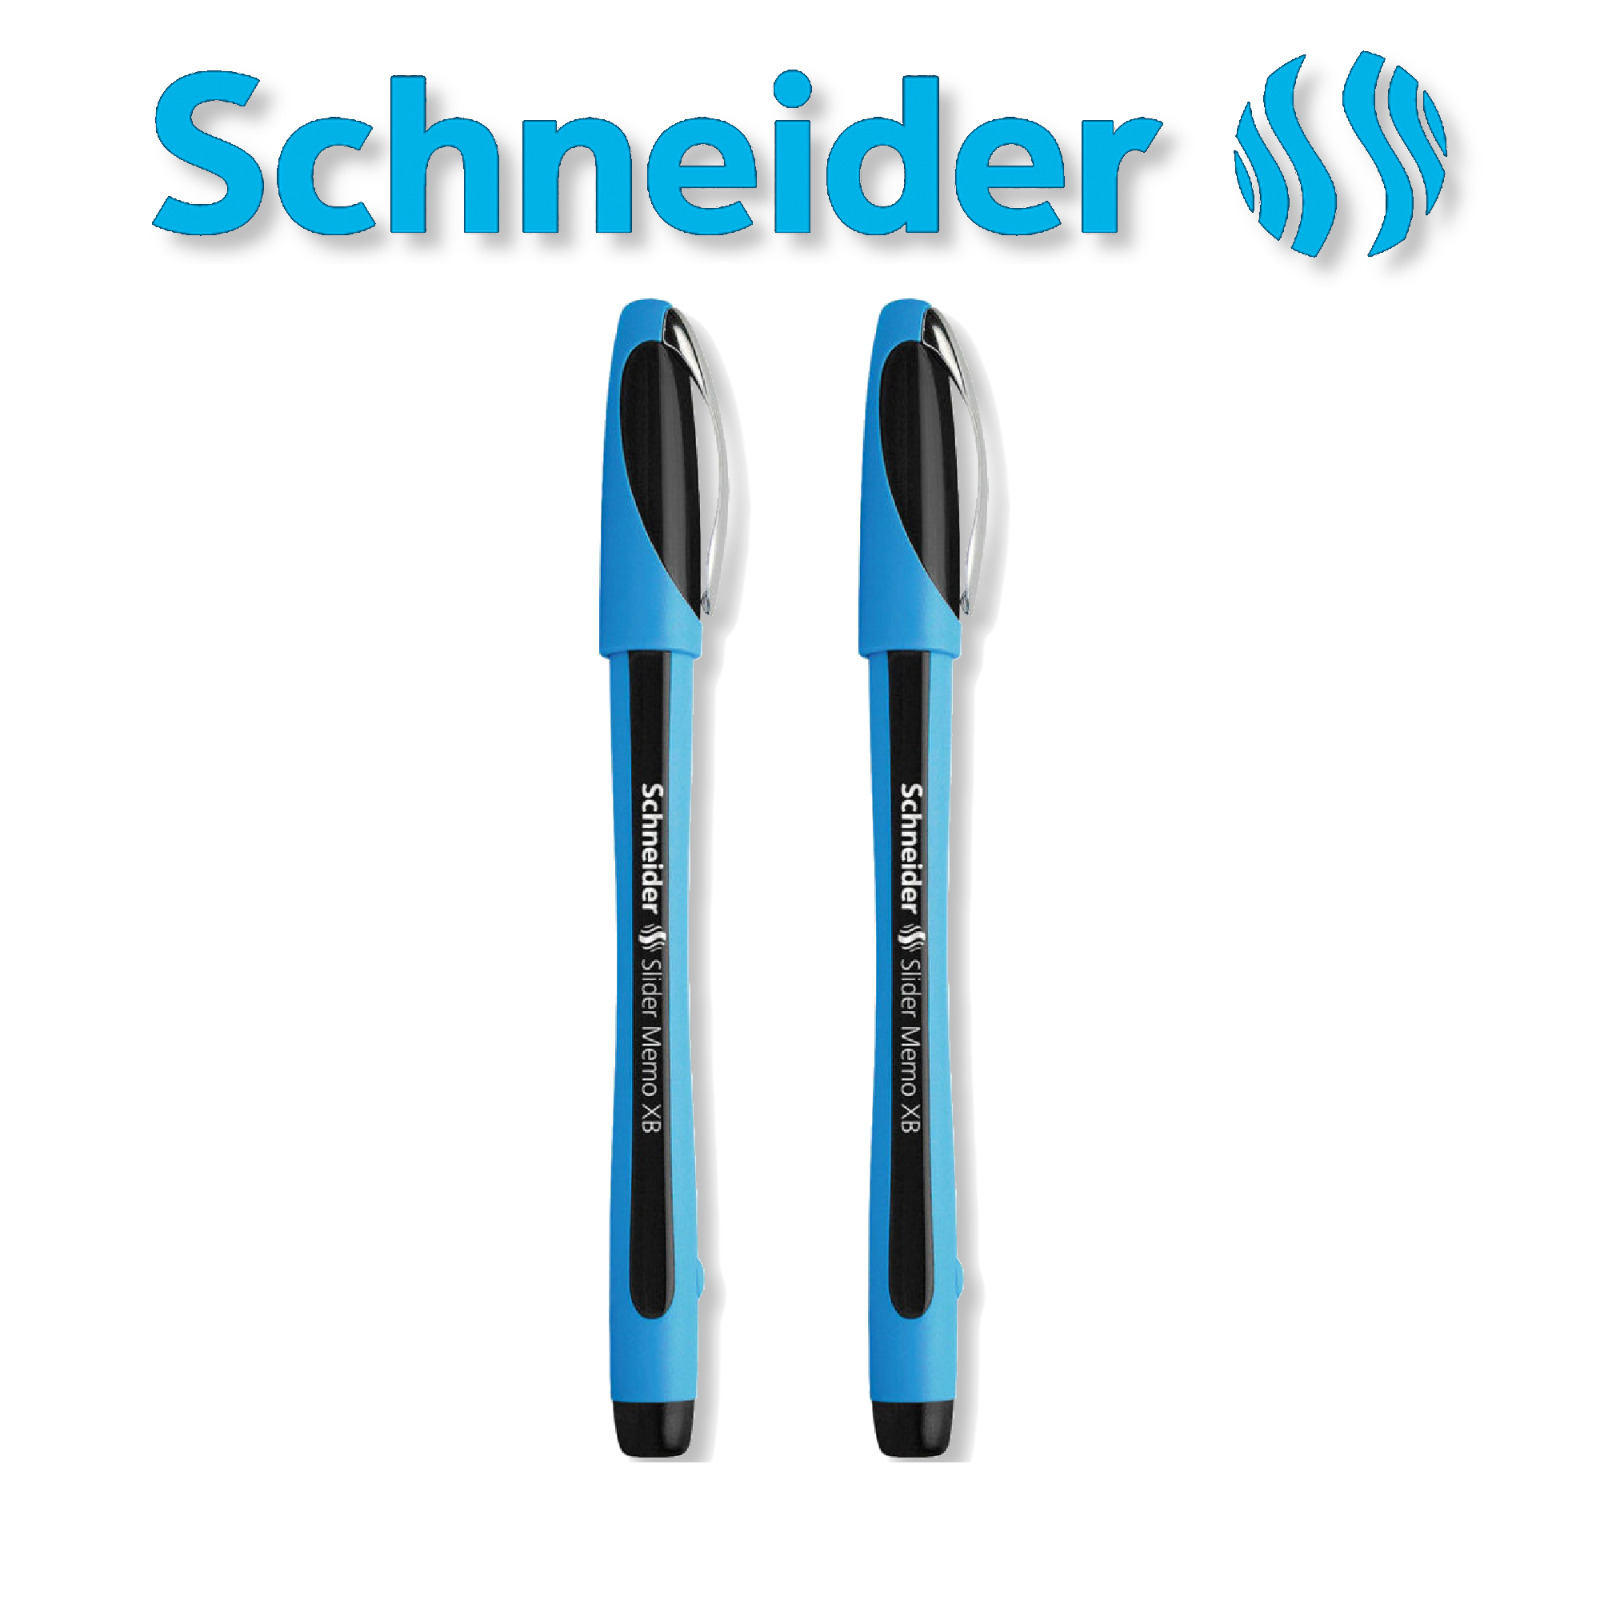 Schneider Slider Pen Ballpoint Memo Xb 2 Piece